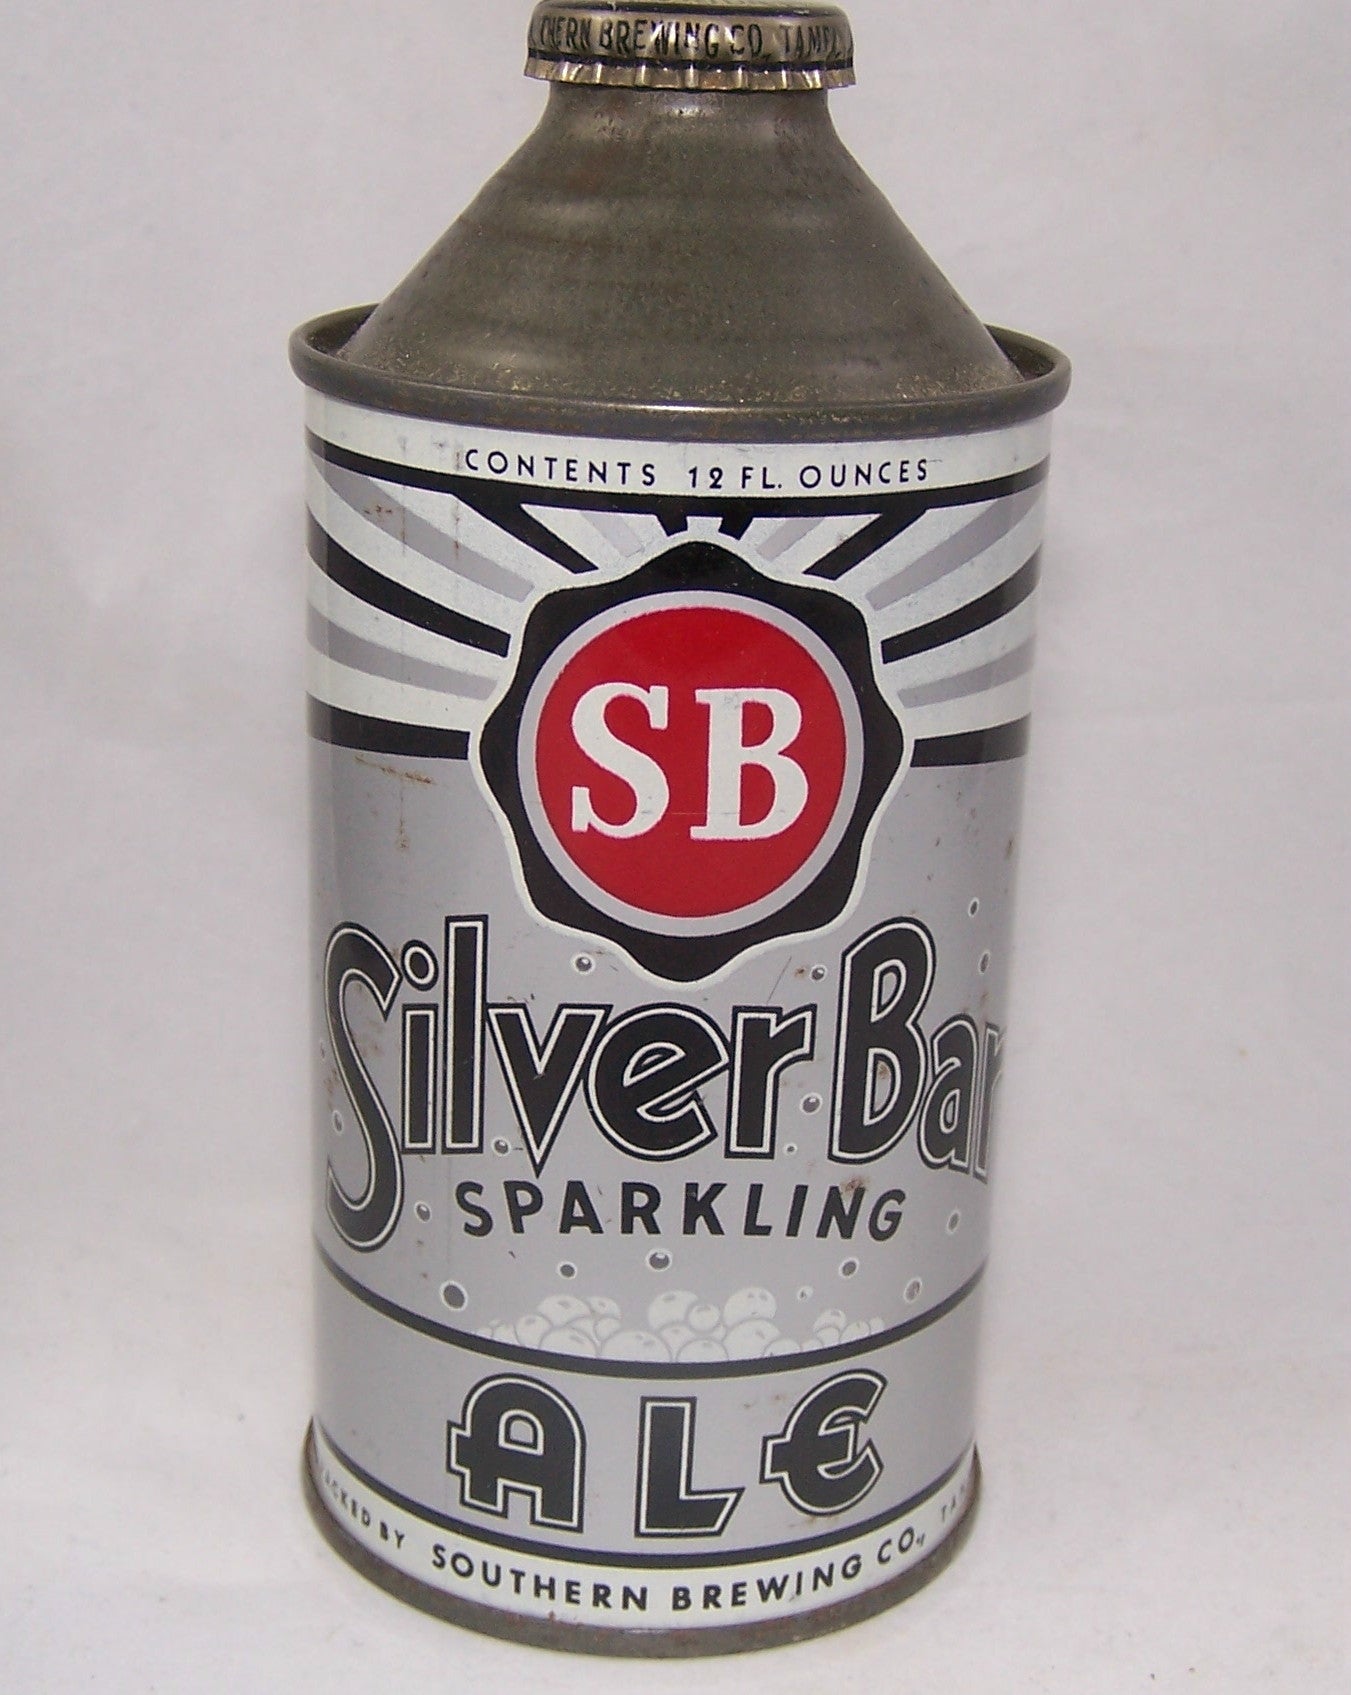 Silver Bar Sparkling Ale, USBC 183-03, Grade 1